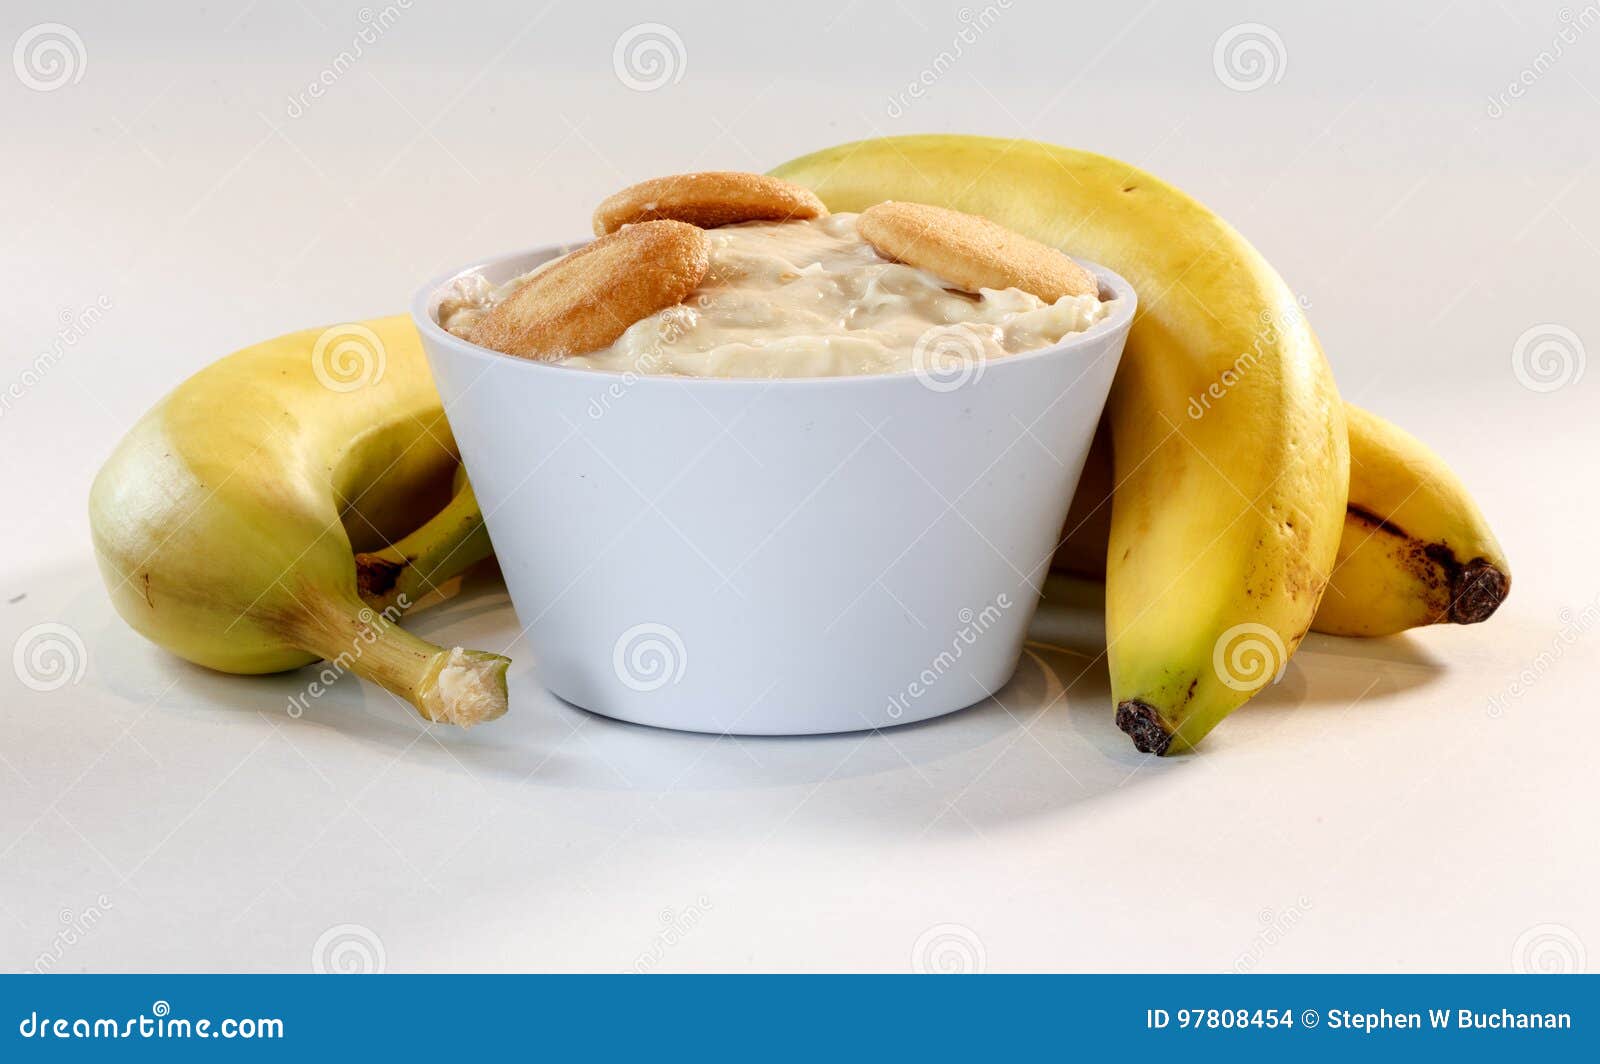 香蕉棉花糖布丁怎么做_香蕉棉花糖布丁的做法_豆果美食